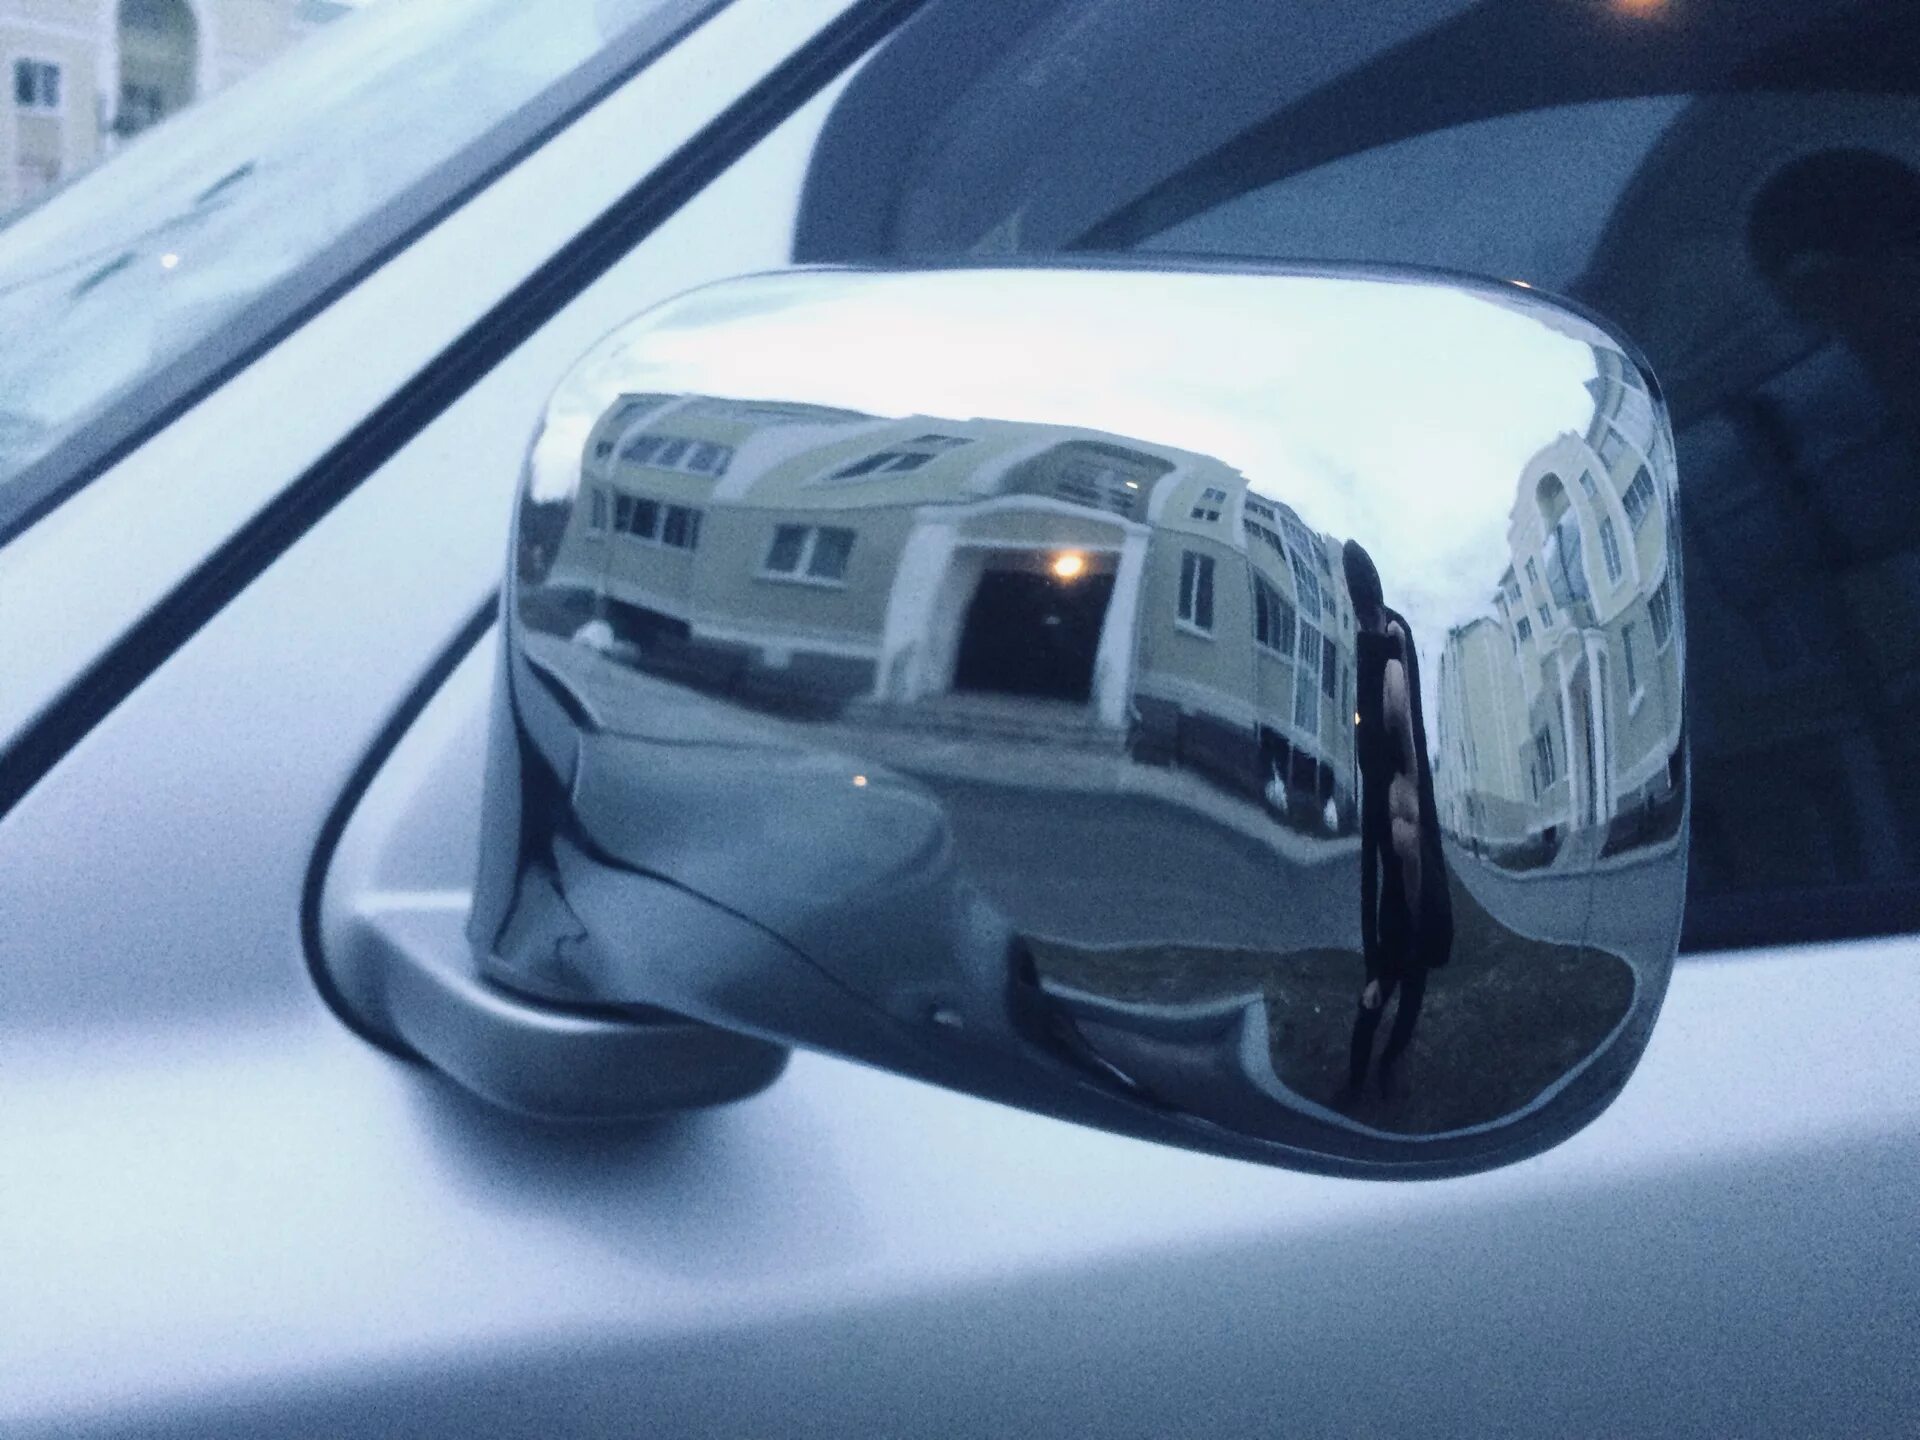 Хромированные накладки Honda CRV rd1. Хром-накладки CR-V rd1. Хром накладки зеркал Honda CR-V 2003. Honda crv1 накладки на зеркала.